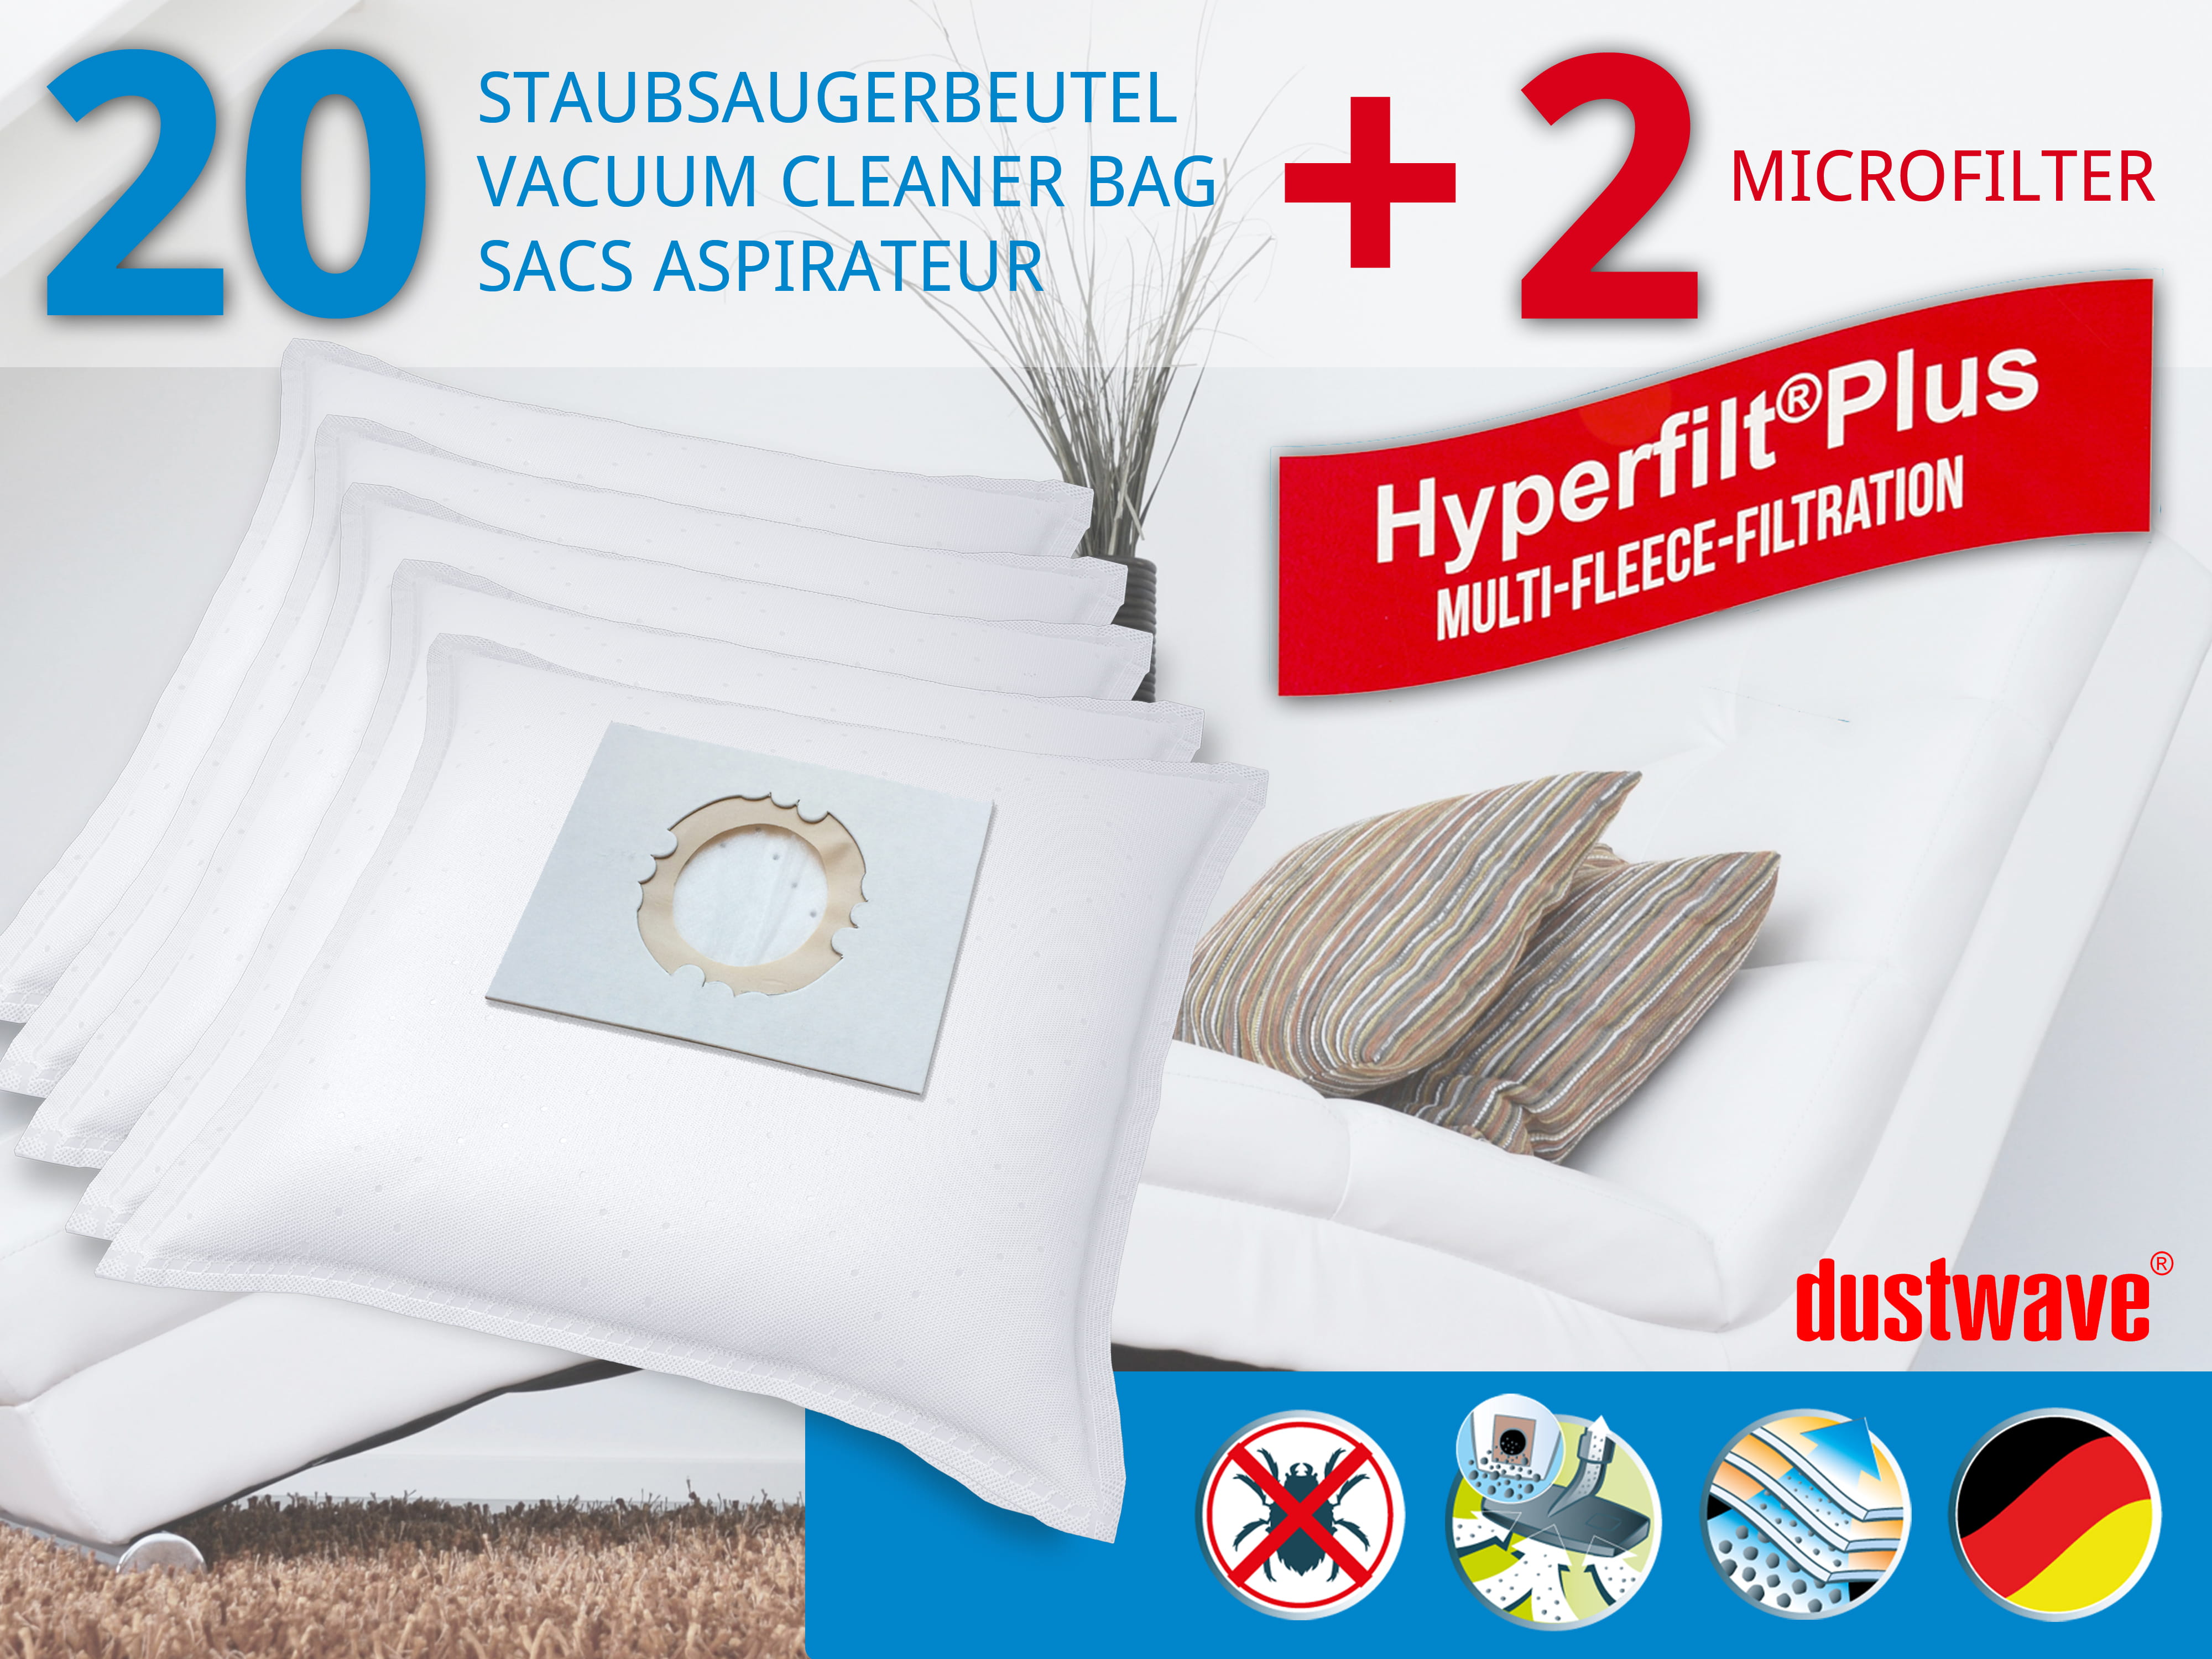 Dustwave® 20 Staubsaugerbeutel für Hoover SCST730FB011 - hocheffizient, mehrlagiges Mikrovlies mit Hygieneverschluss - Made in Germany